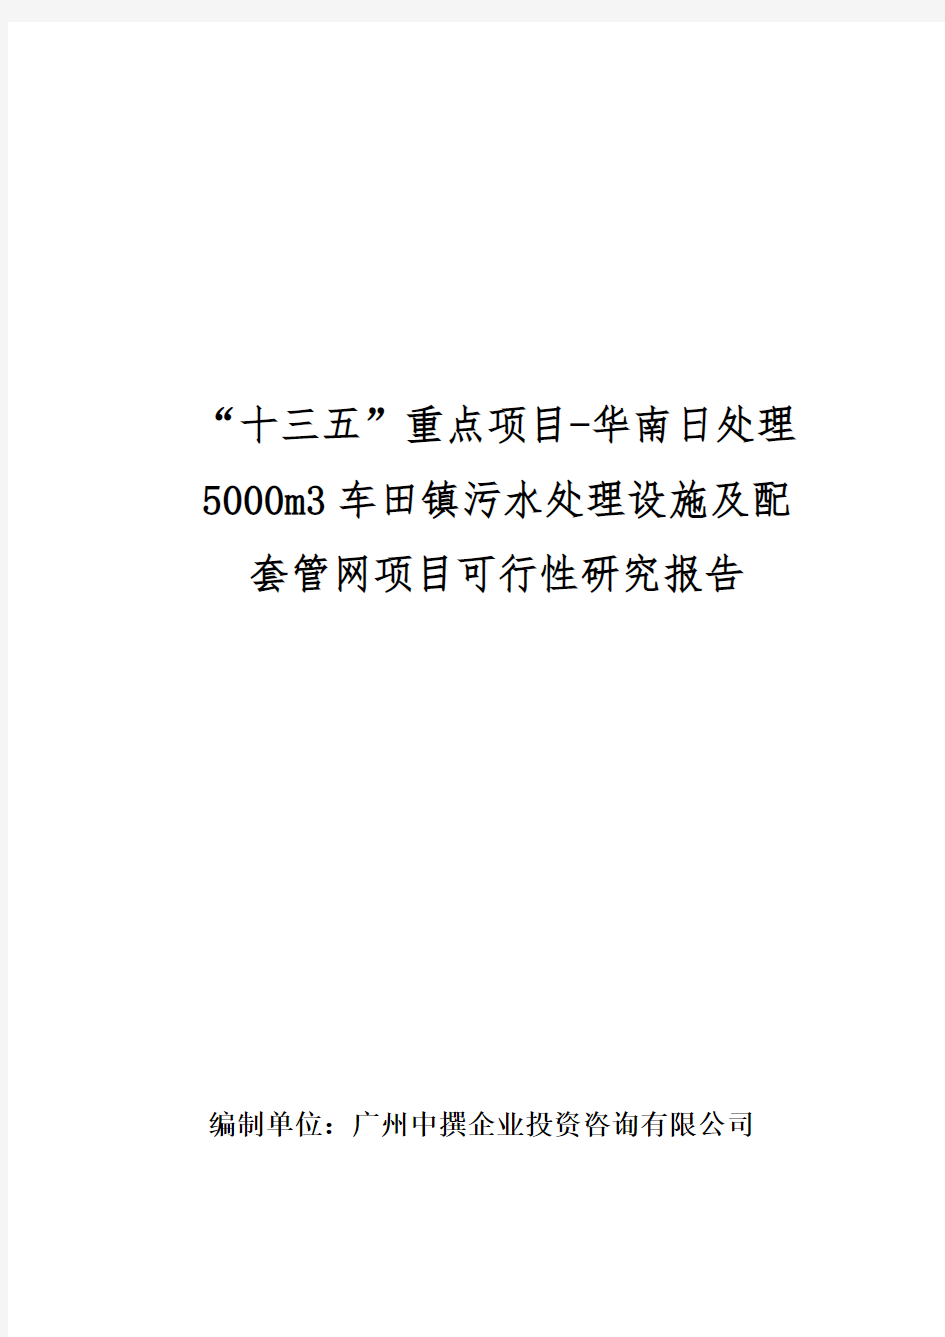 “十三五”重点项目-华南日处理5000m3车田镇污水处理设施及配套管网项目可行性研究报告